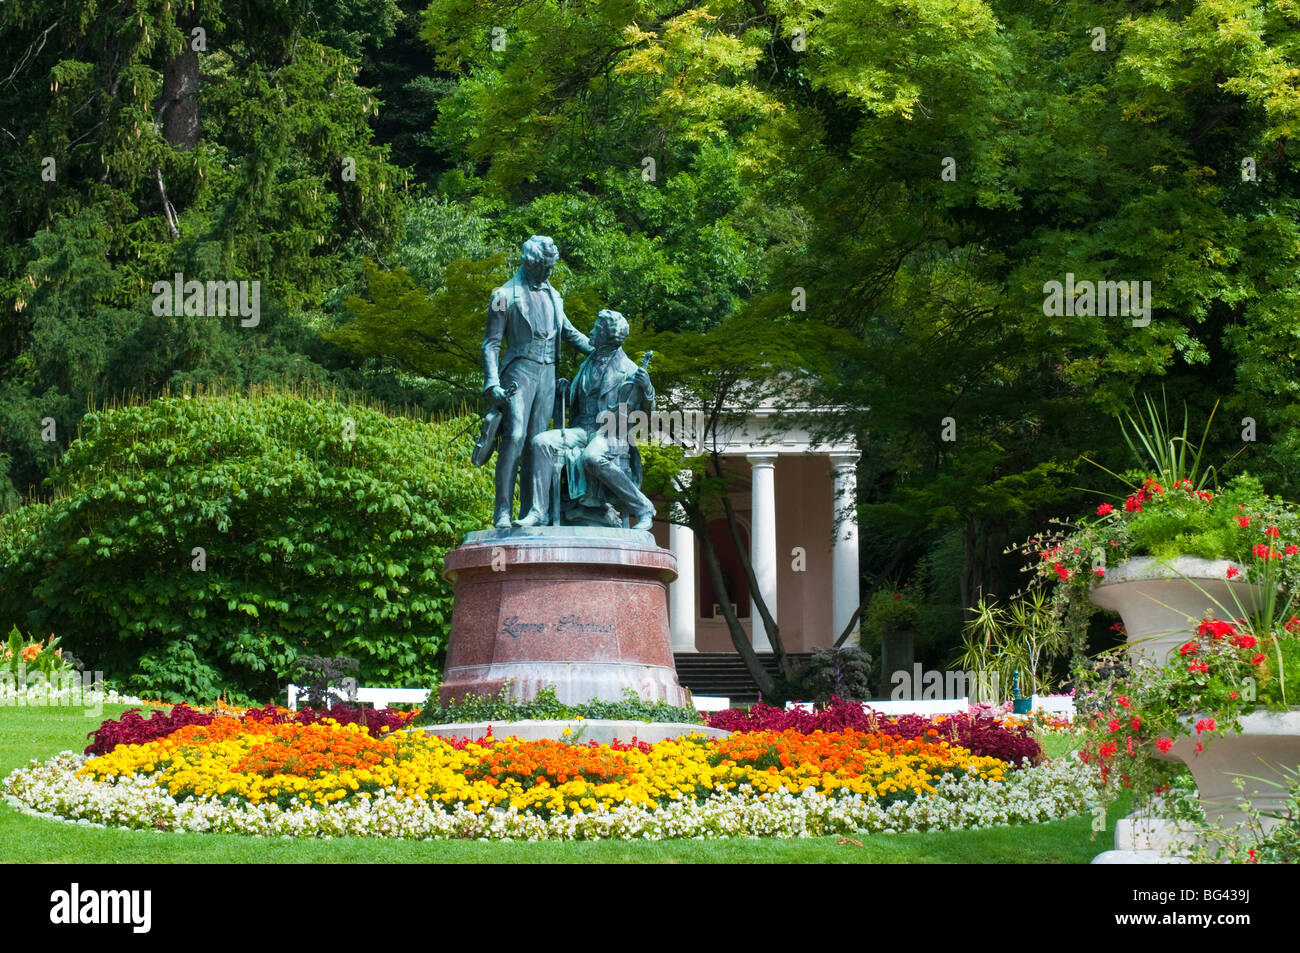 Kurpark, Baden bei Wien, Wien, Österreich | spa gardens, Baden, Niederösterreich, Autriche Banque D'Images